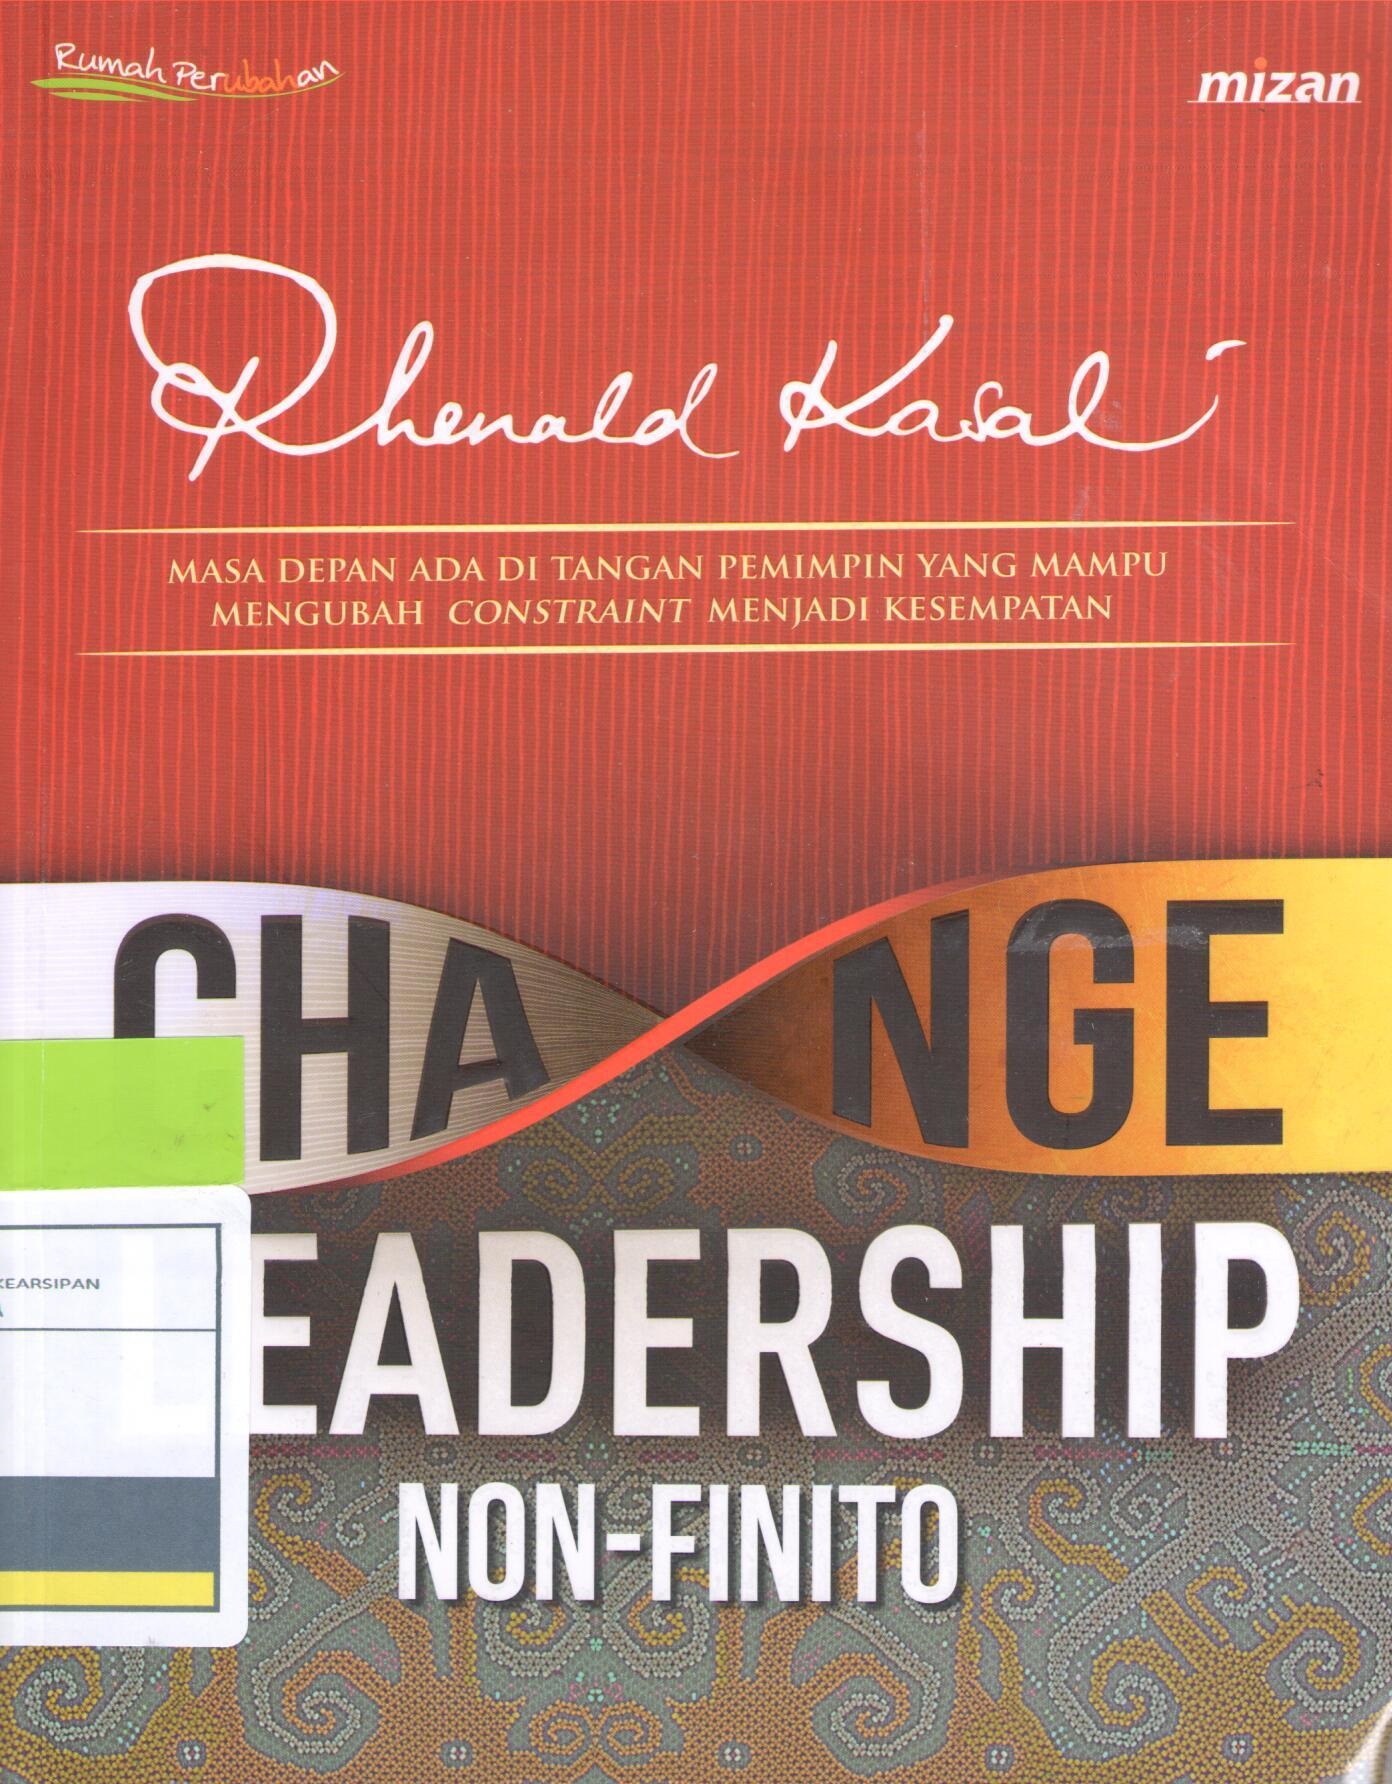 Change leadership non-finito :  masa depan ada di tangan pemimpin yang mampu mengubah